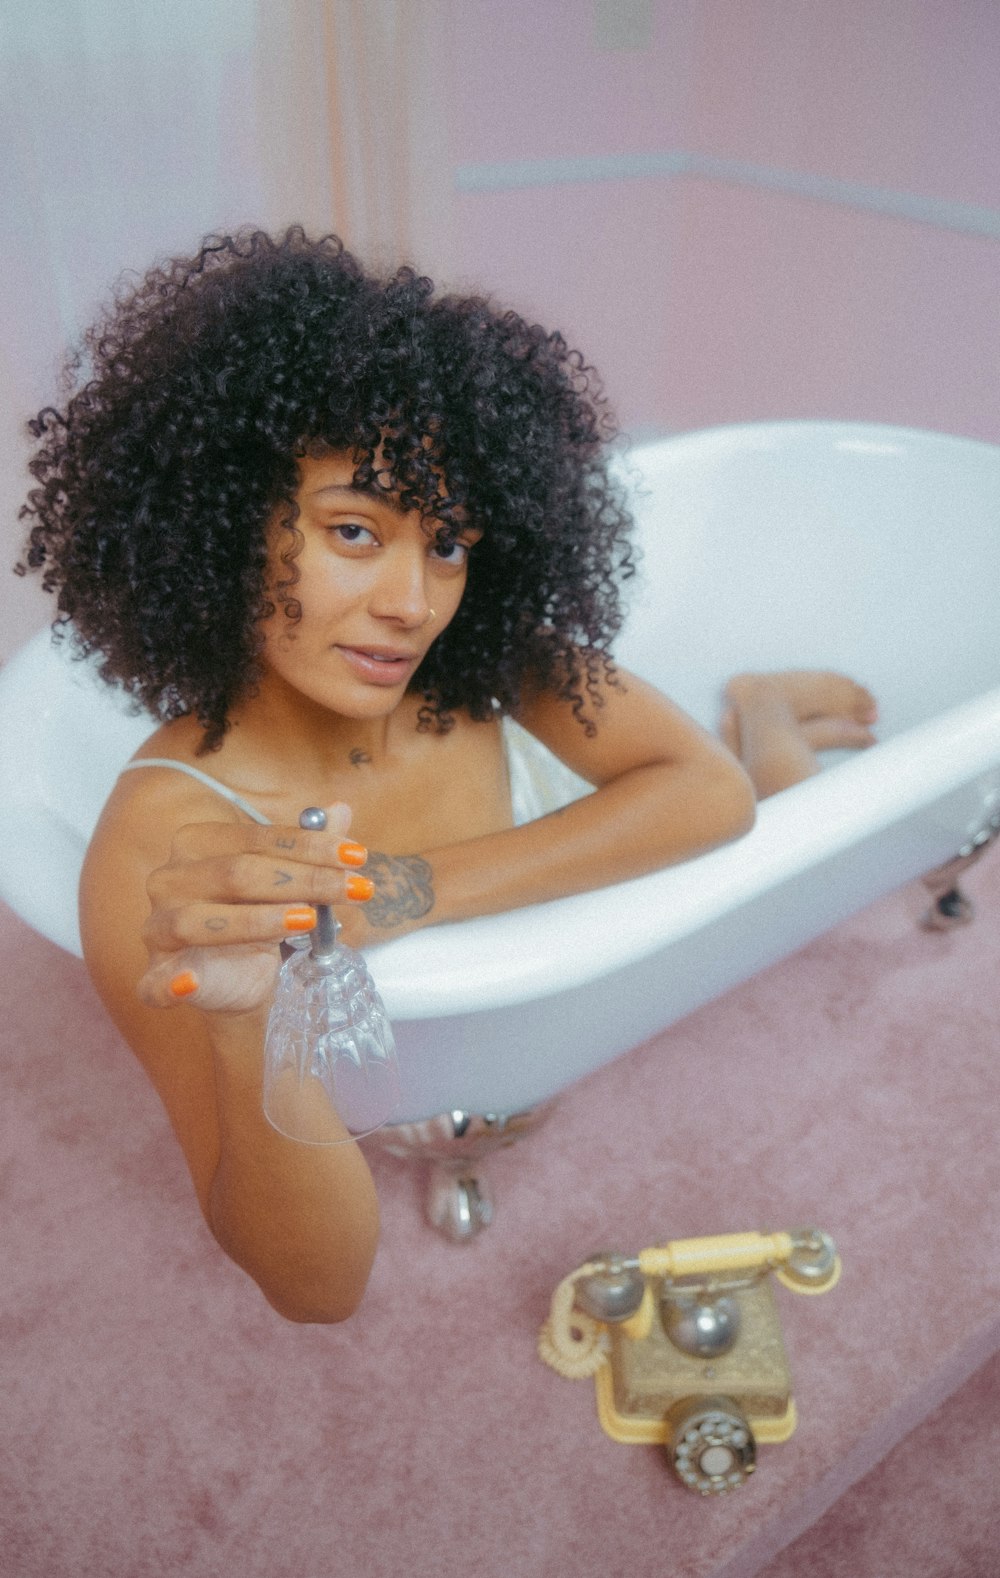 Una mujer sentada en una bañera con un teléfono a su lado